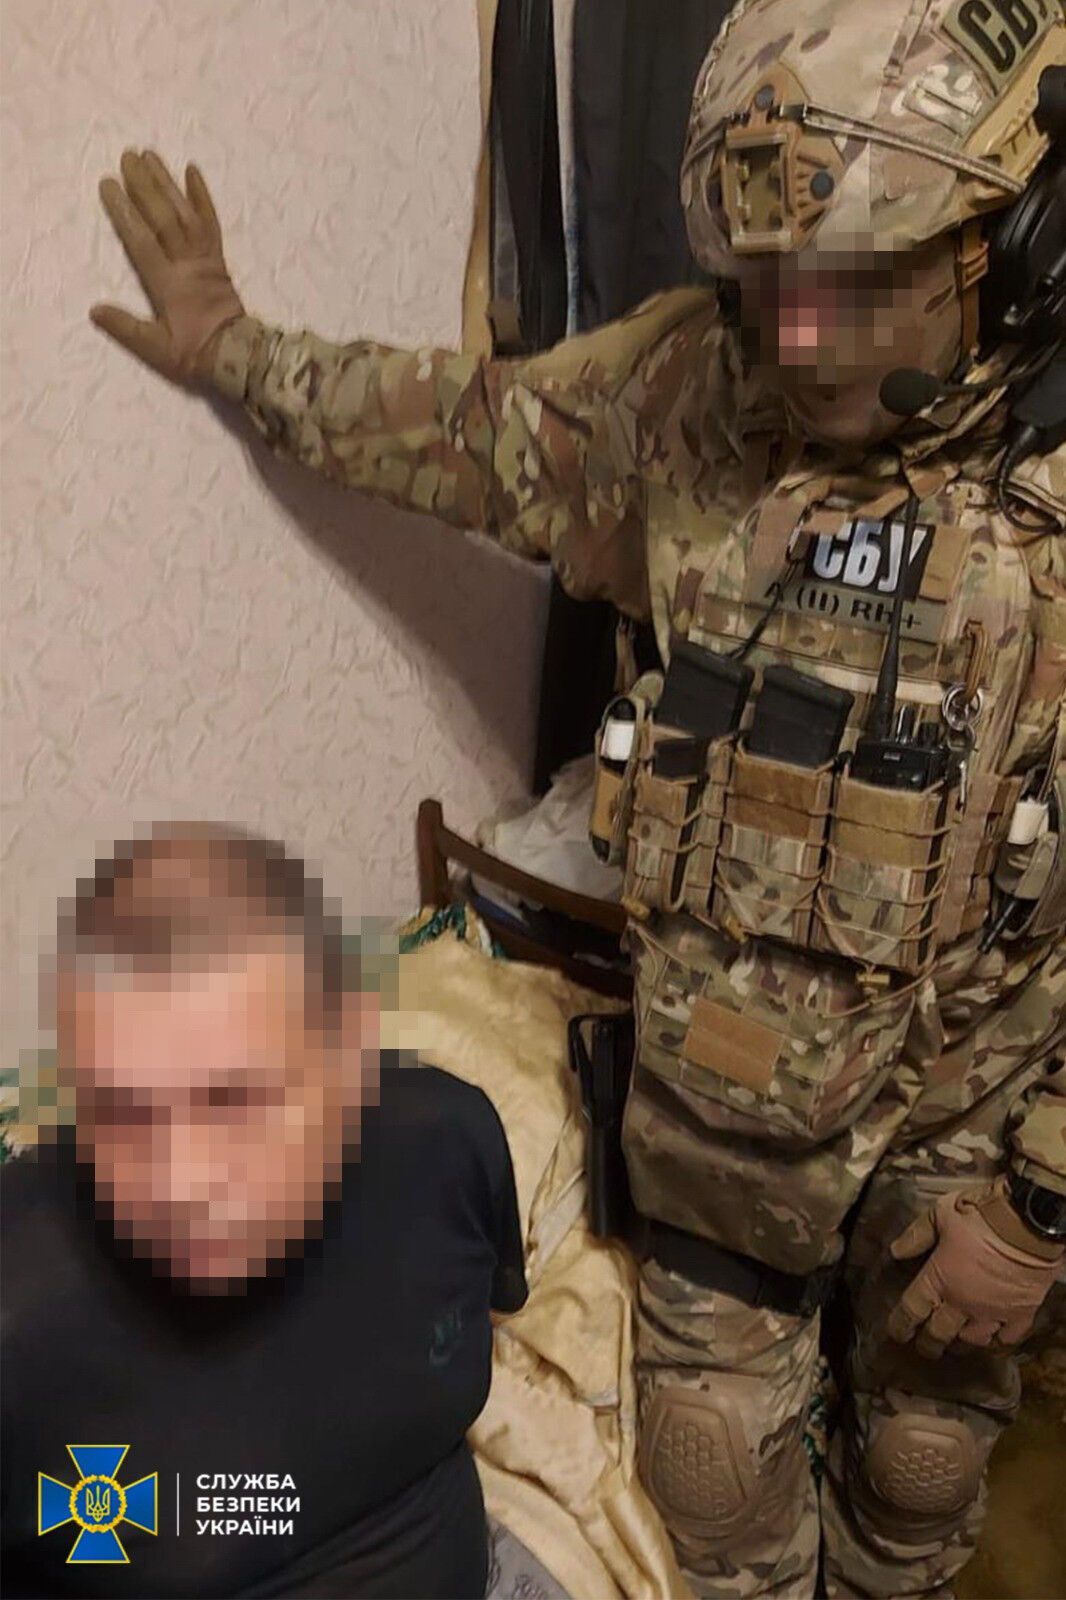 В Запорожье задержали бывшего милиционера, который хотел вступить в ЧВК "Вагнер" и воевать против Украины. Фото и видео